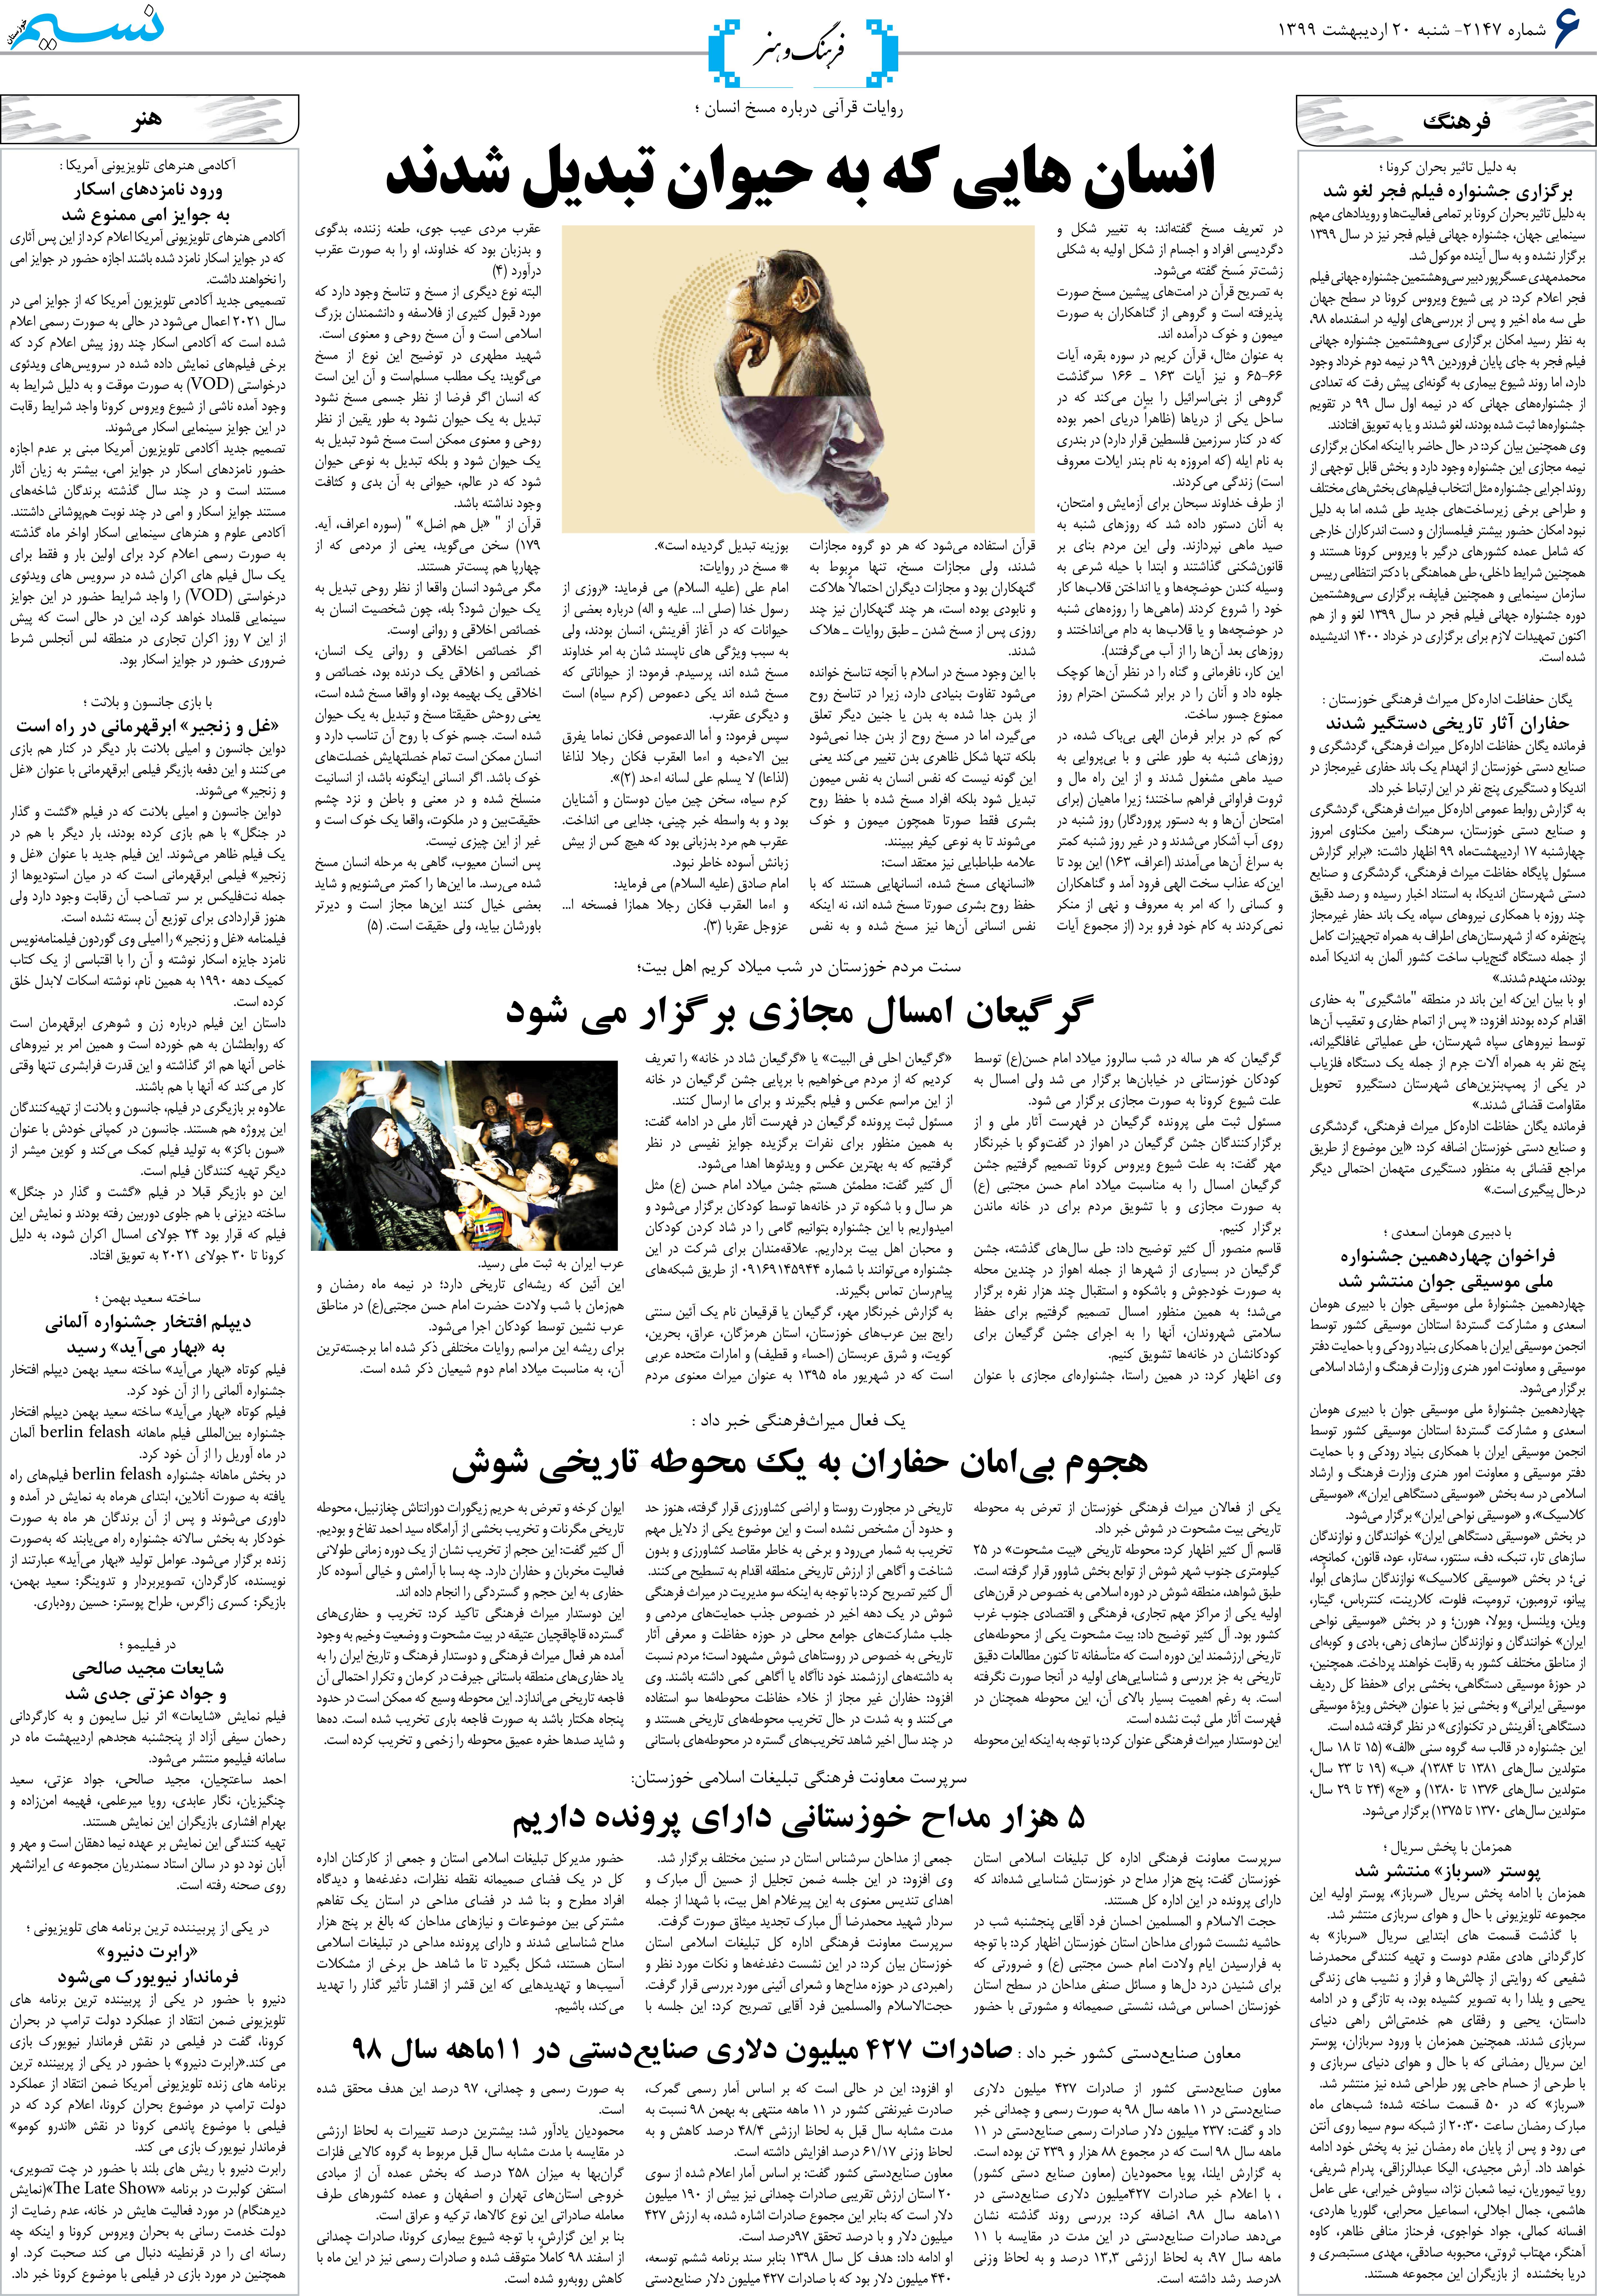 صفحه فرهنگ و هنر روزنامه نسیم شماره 2147